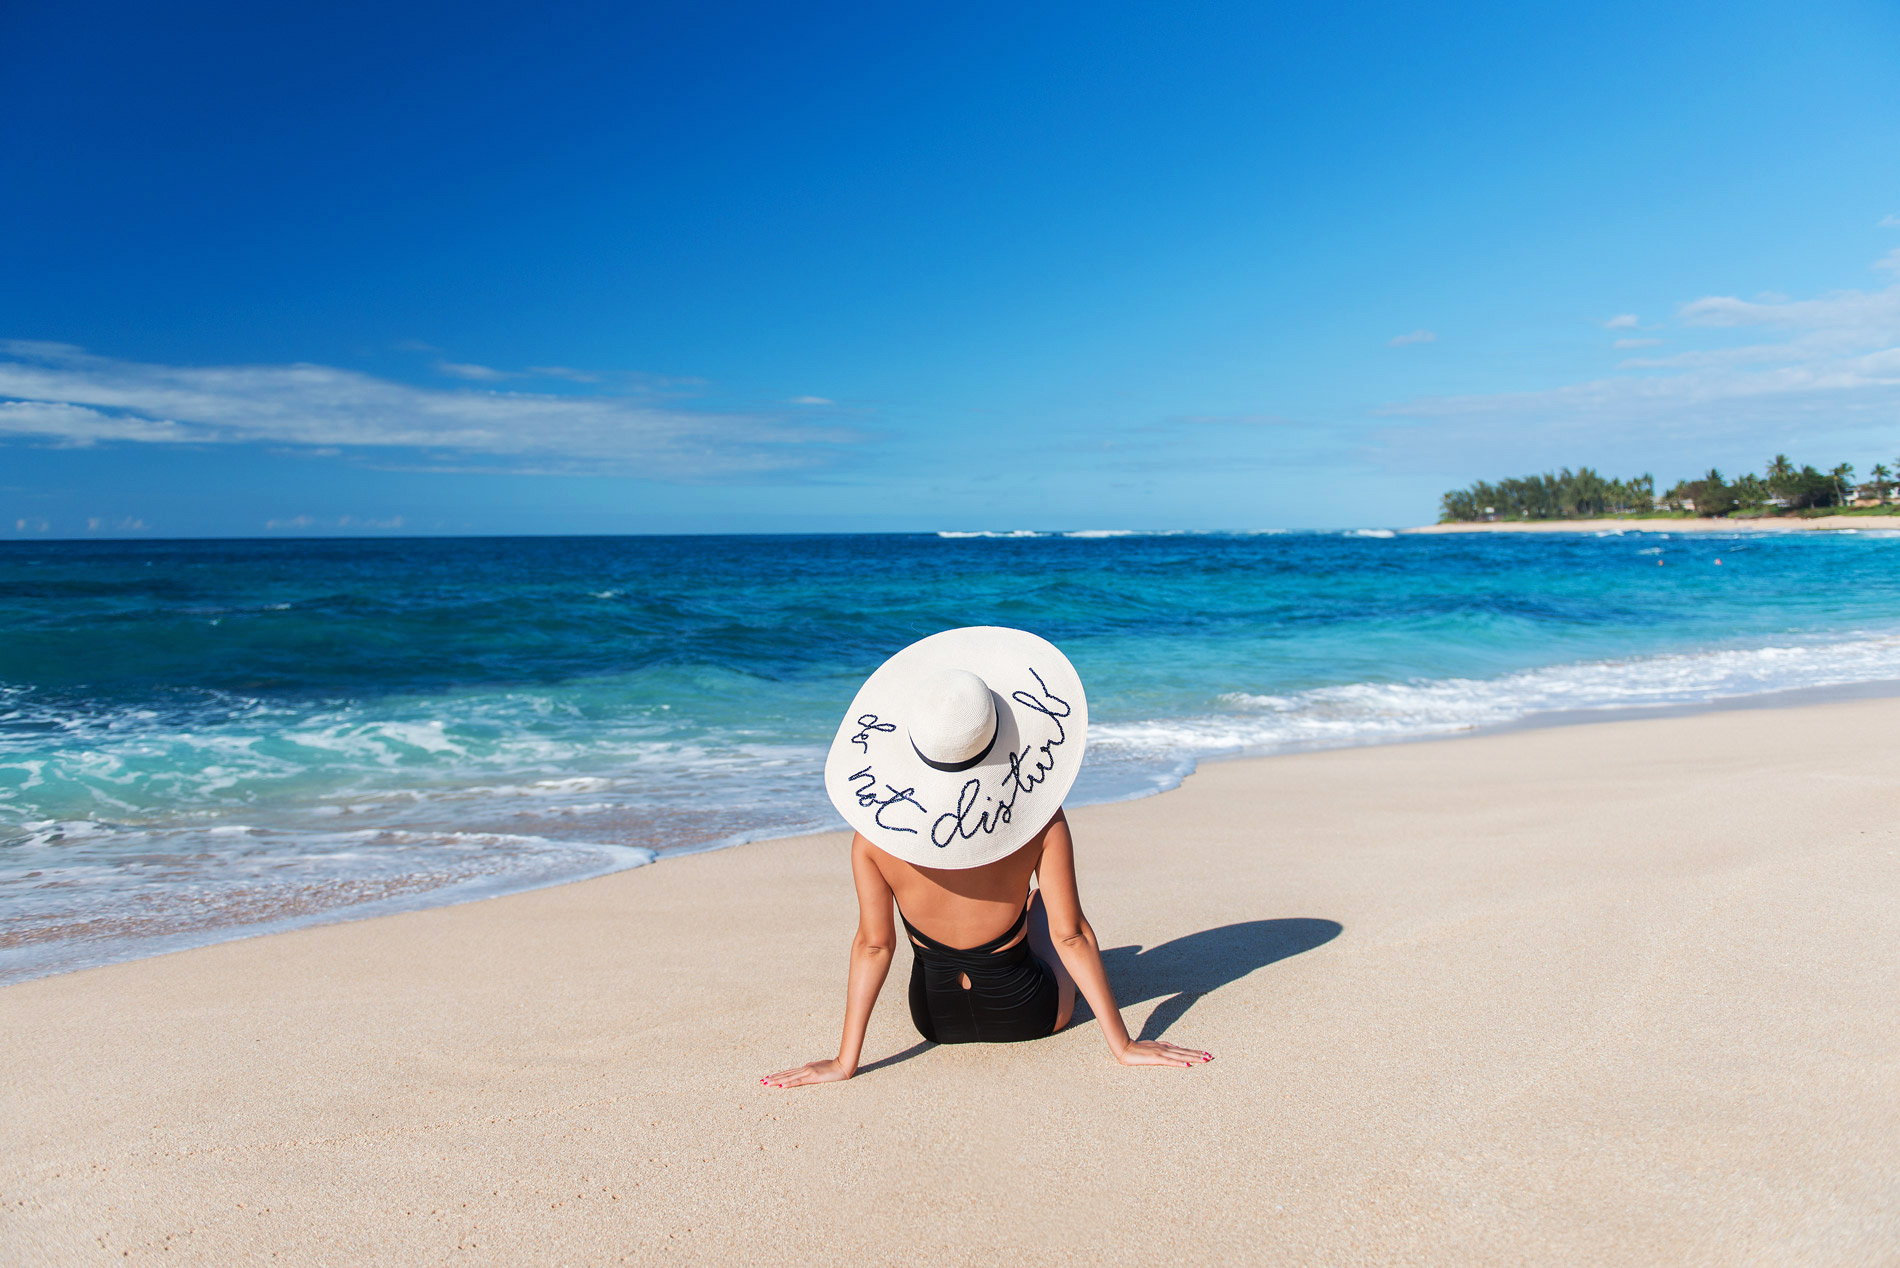 Шляпа на пляже. Девушка в шляпе на пляже. Шляпа для пляжа. Левушка в шояпе на пляже. Шляпа на море.